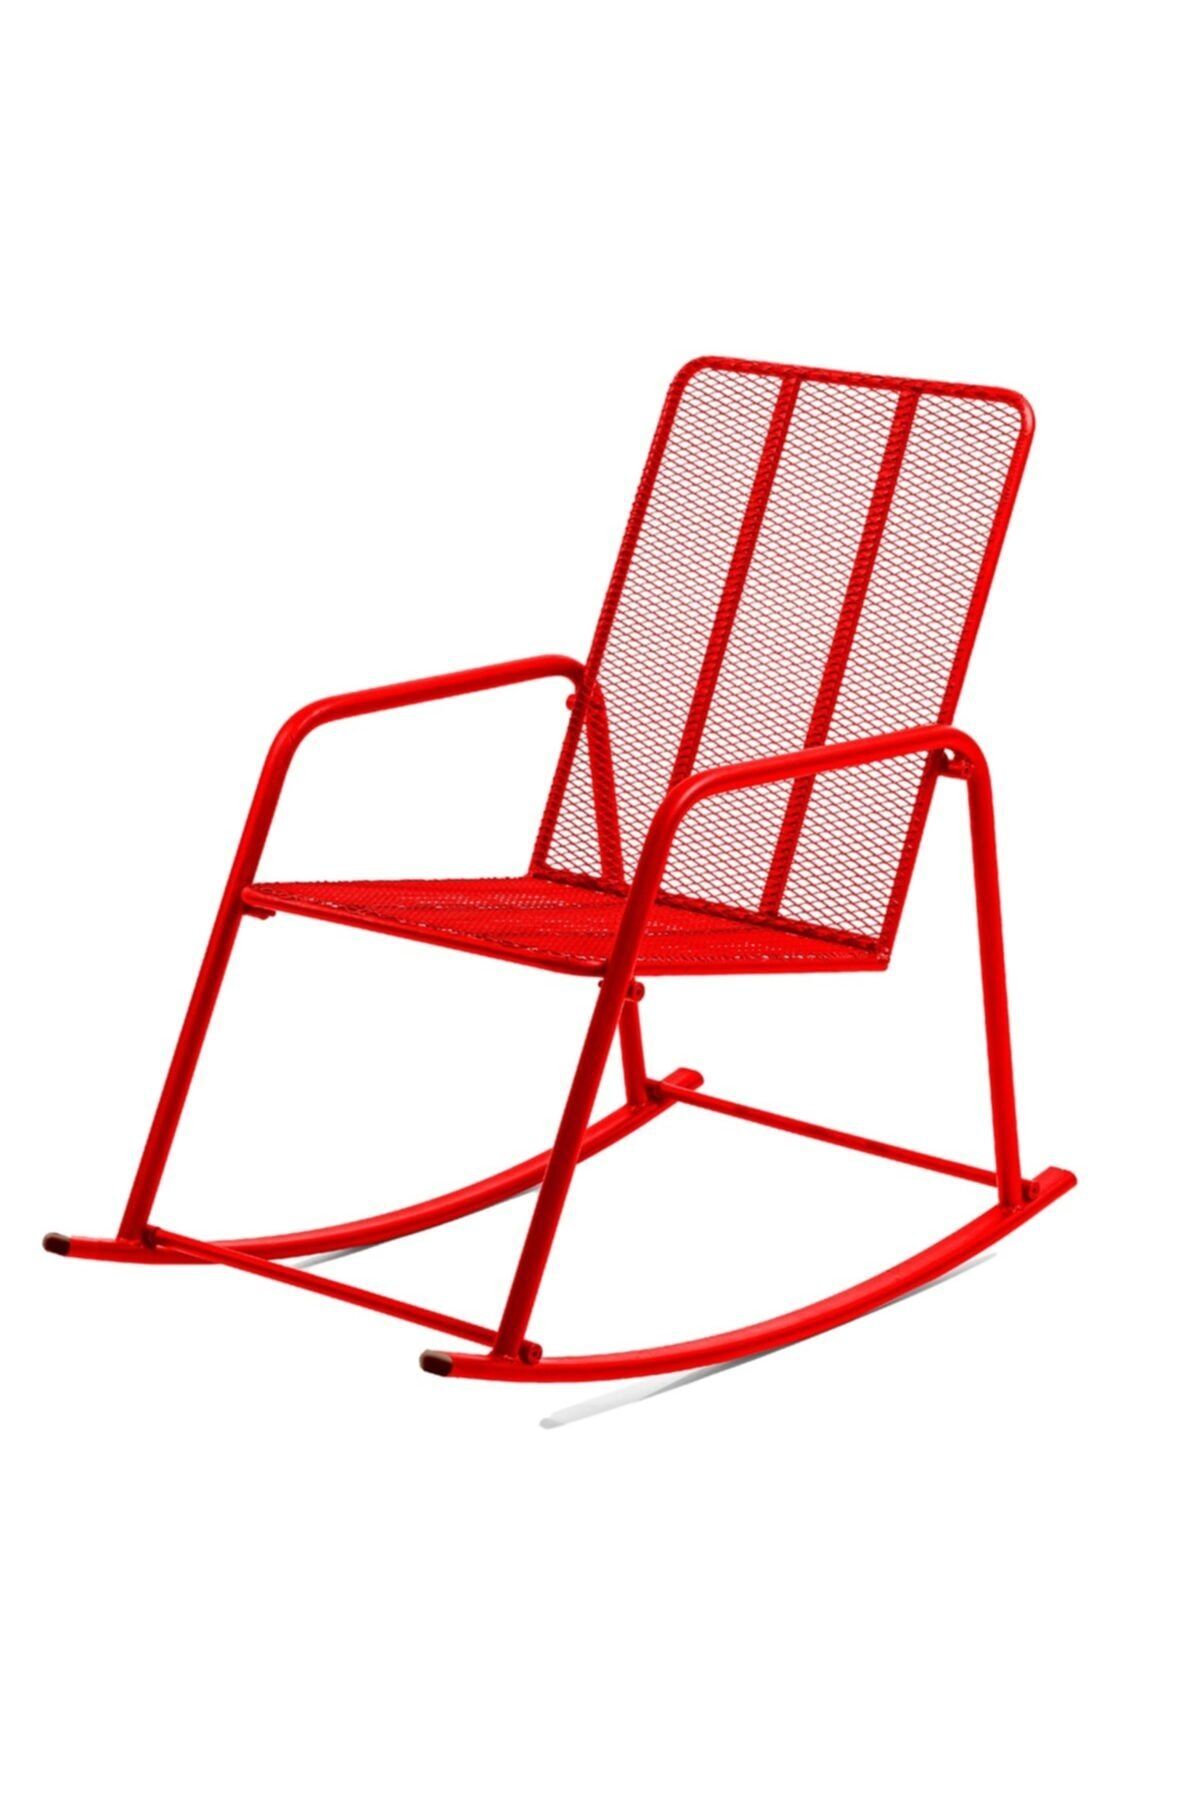 Retodesign Kırmızı Metal Sallanan Sandalye